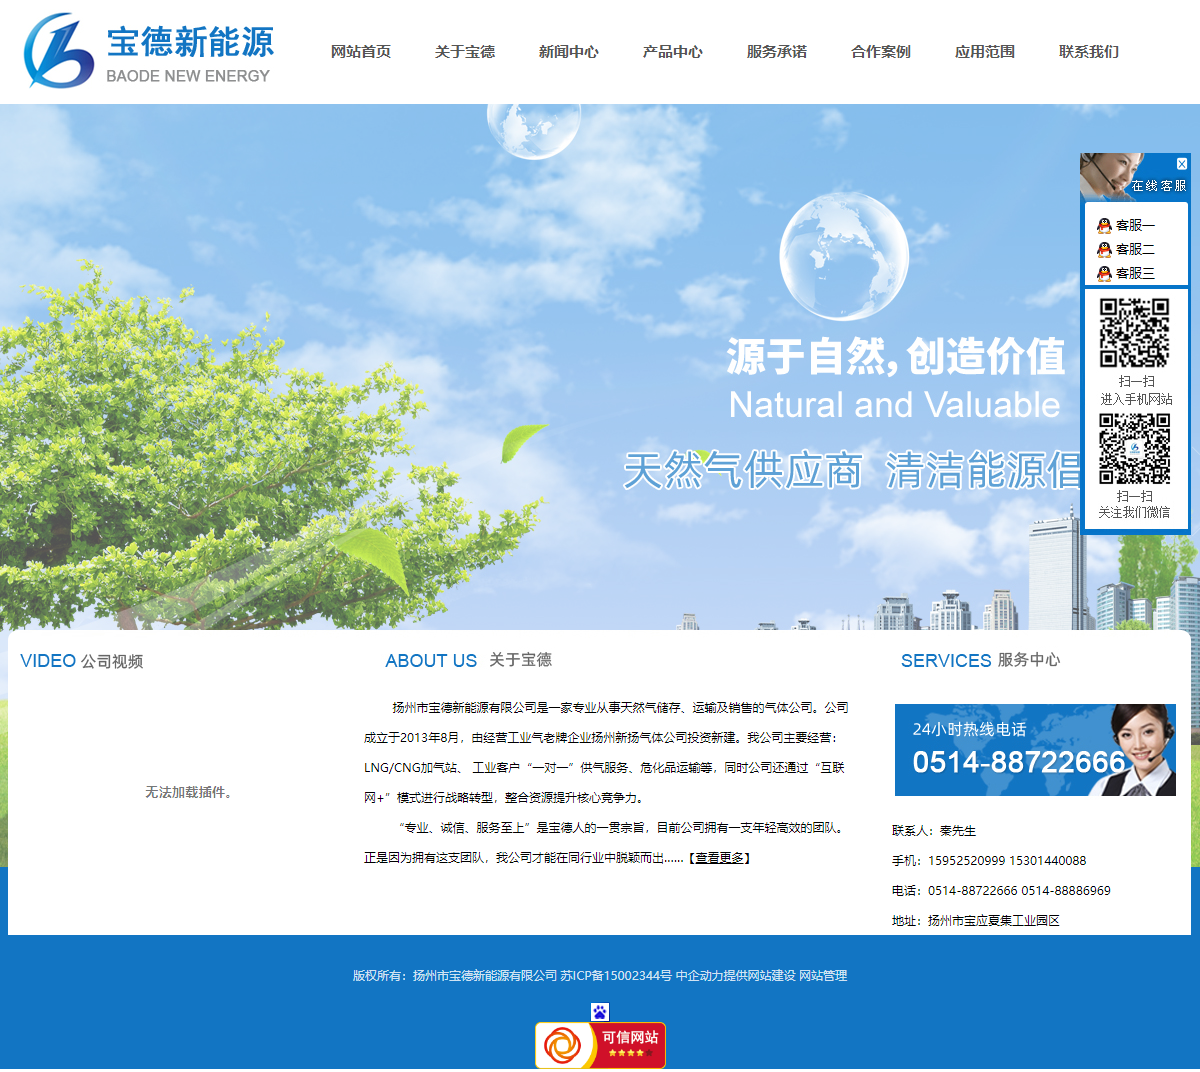 扬州市宝德新能源有限公司网站案例